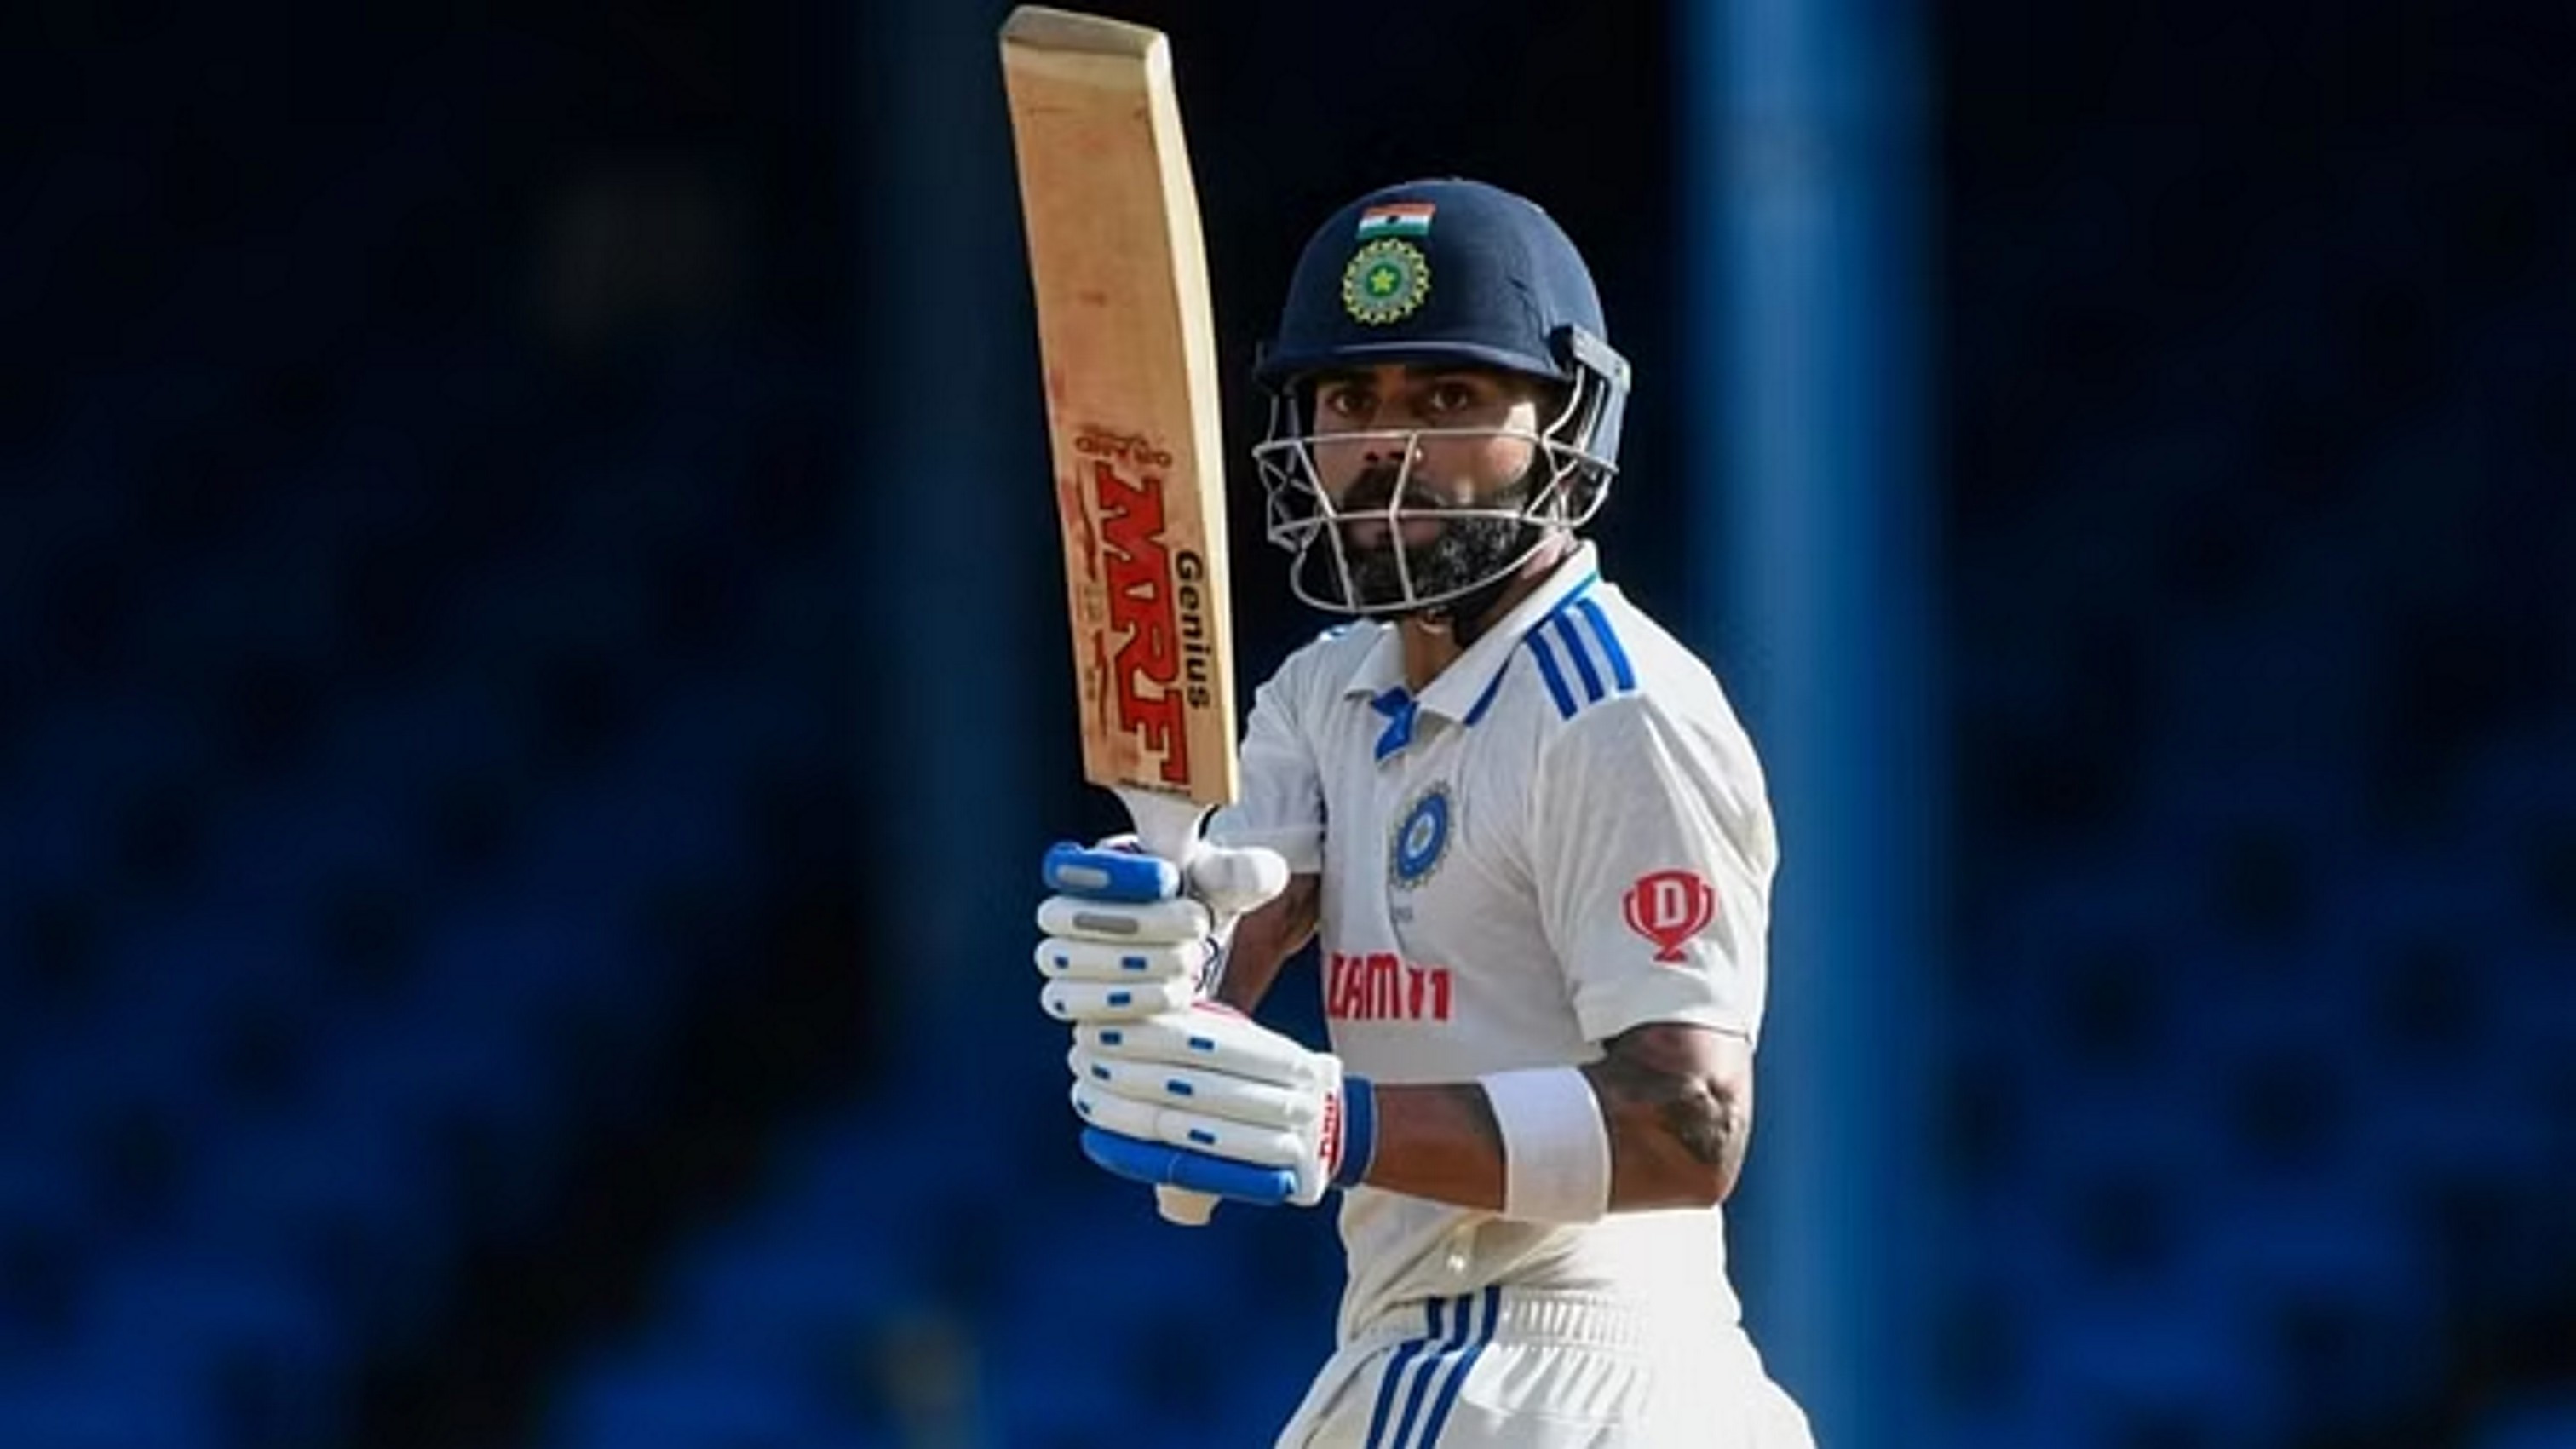 इंग्लैंड के खिलाफ बाकी तीन टेस्ट के लिए टीम घोषित, विराट कोहली सीरीज से बाहर